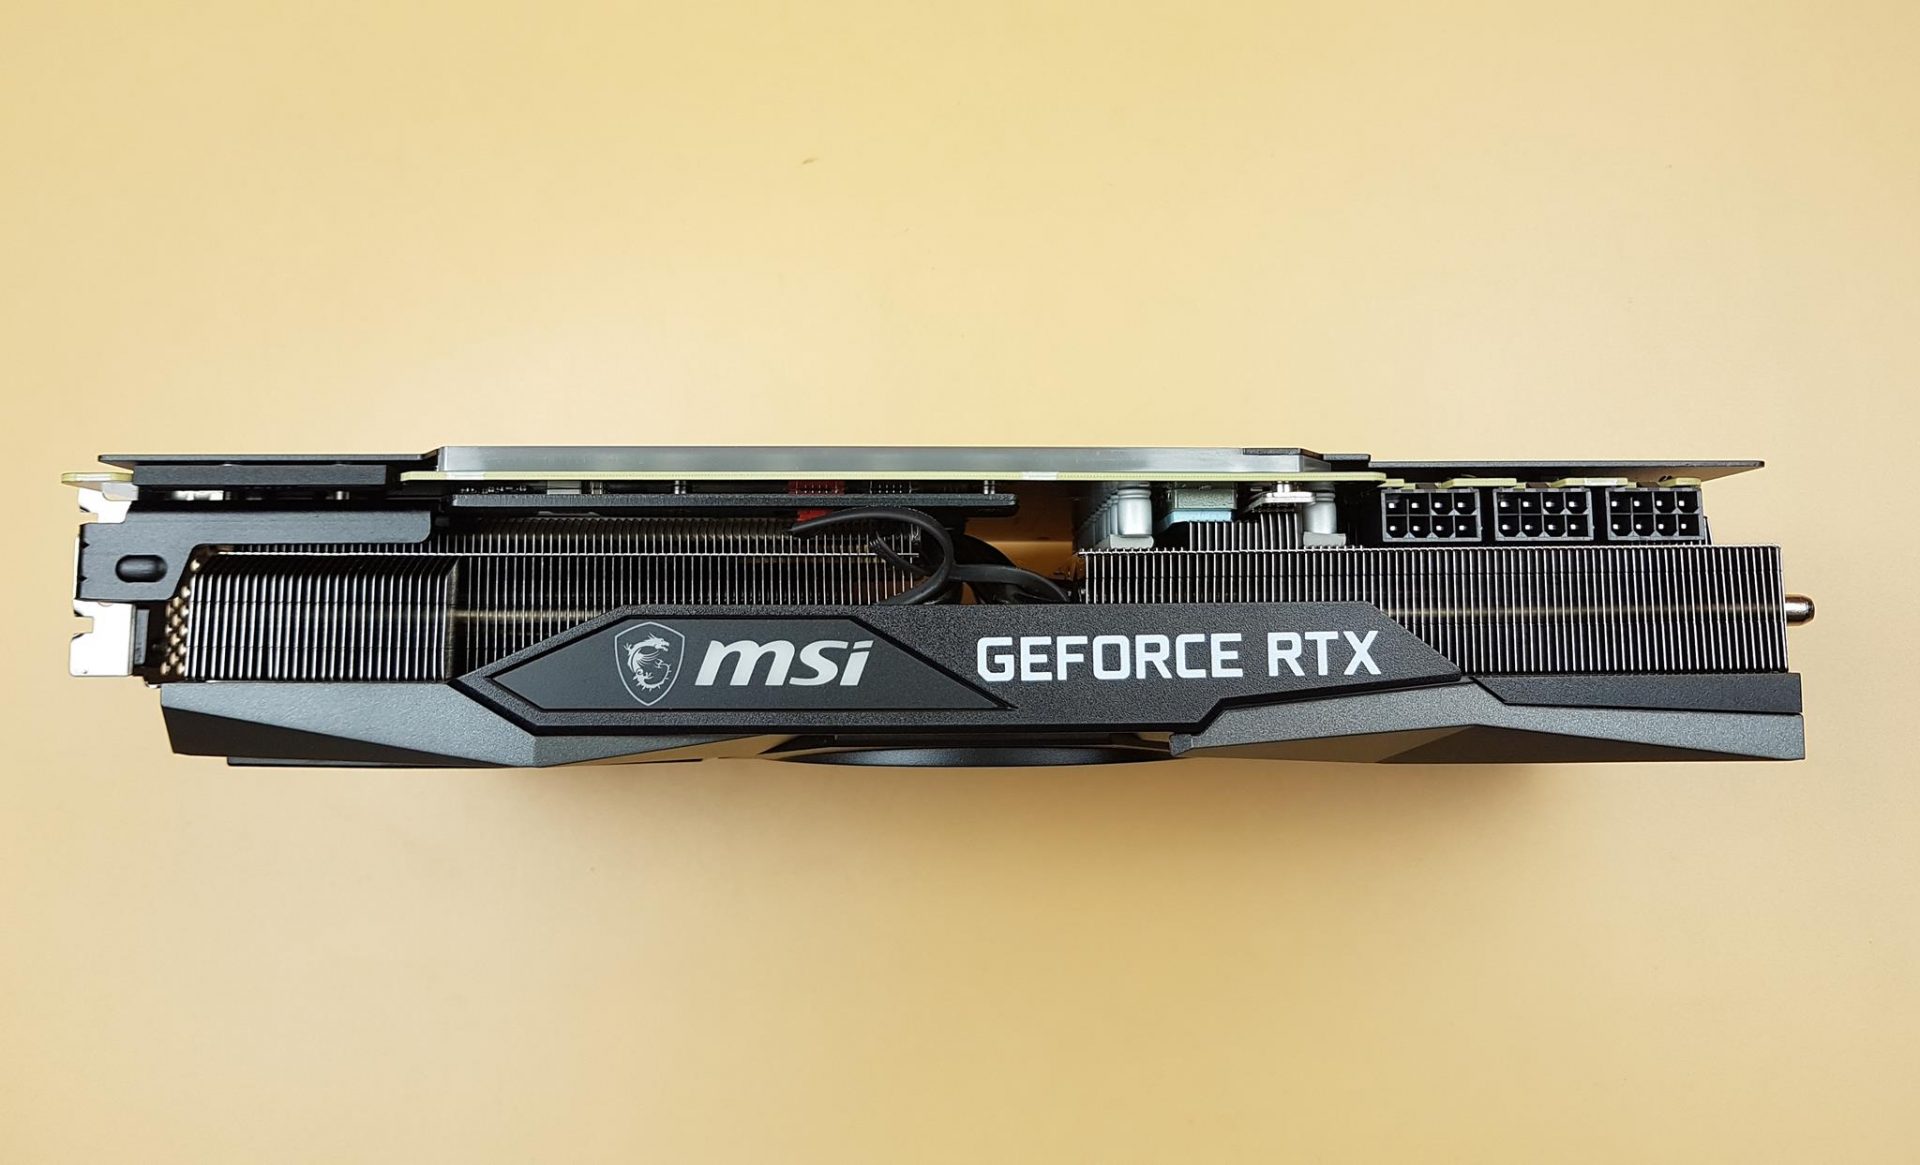 The heatsink of the MSI GeForce RTX 3090